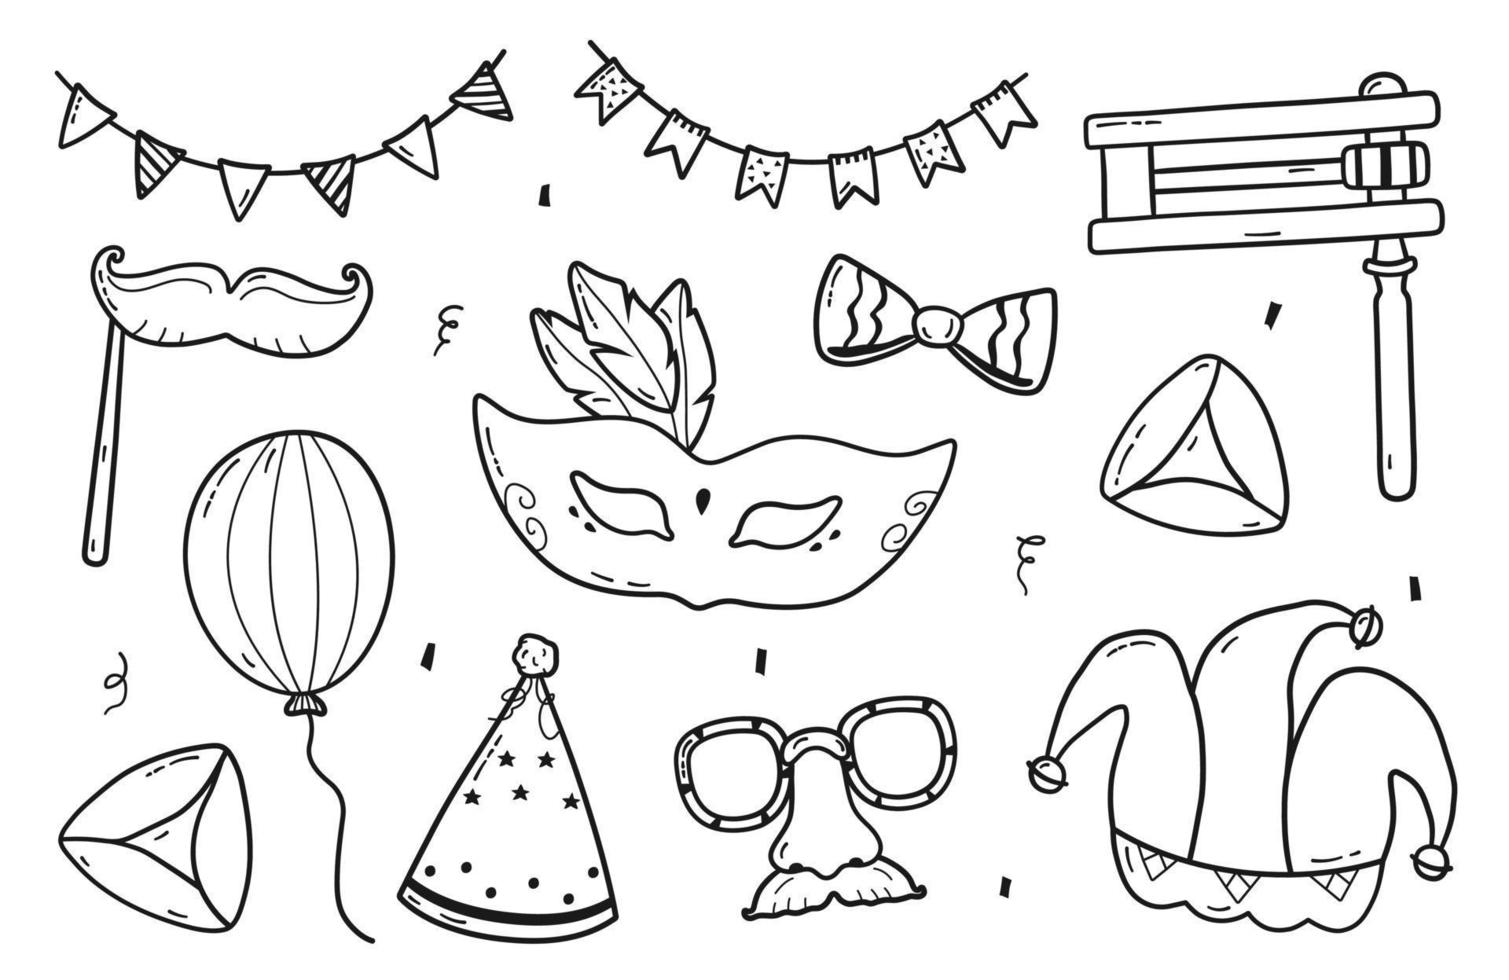 conjunto de elementos dibujados a mano purim. colección de vectores de máscaras de carnaval de vacaciones, gragger, galletas hamantaschen, sombrero de bufón, globo, arco, confeti, sombrero de fiesta y garland en estilo doodle